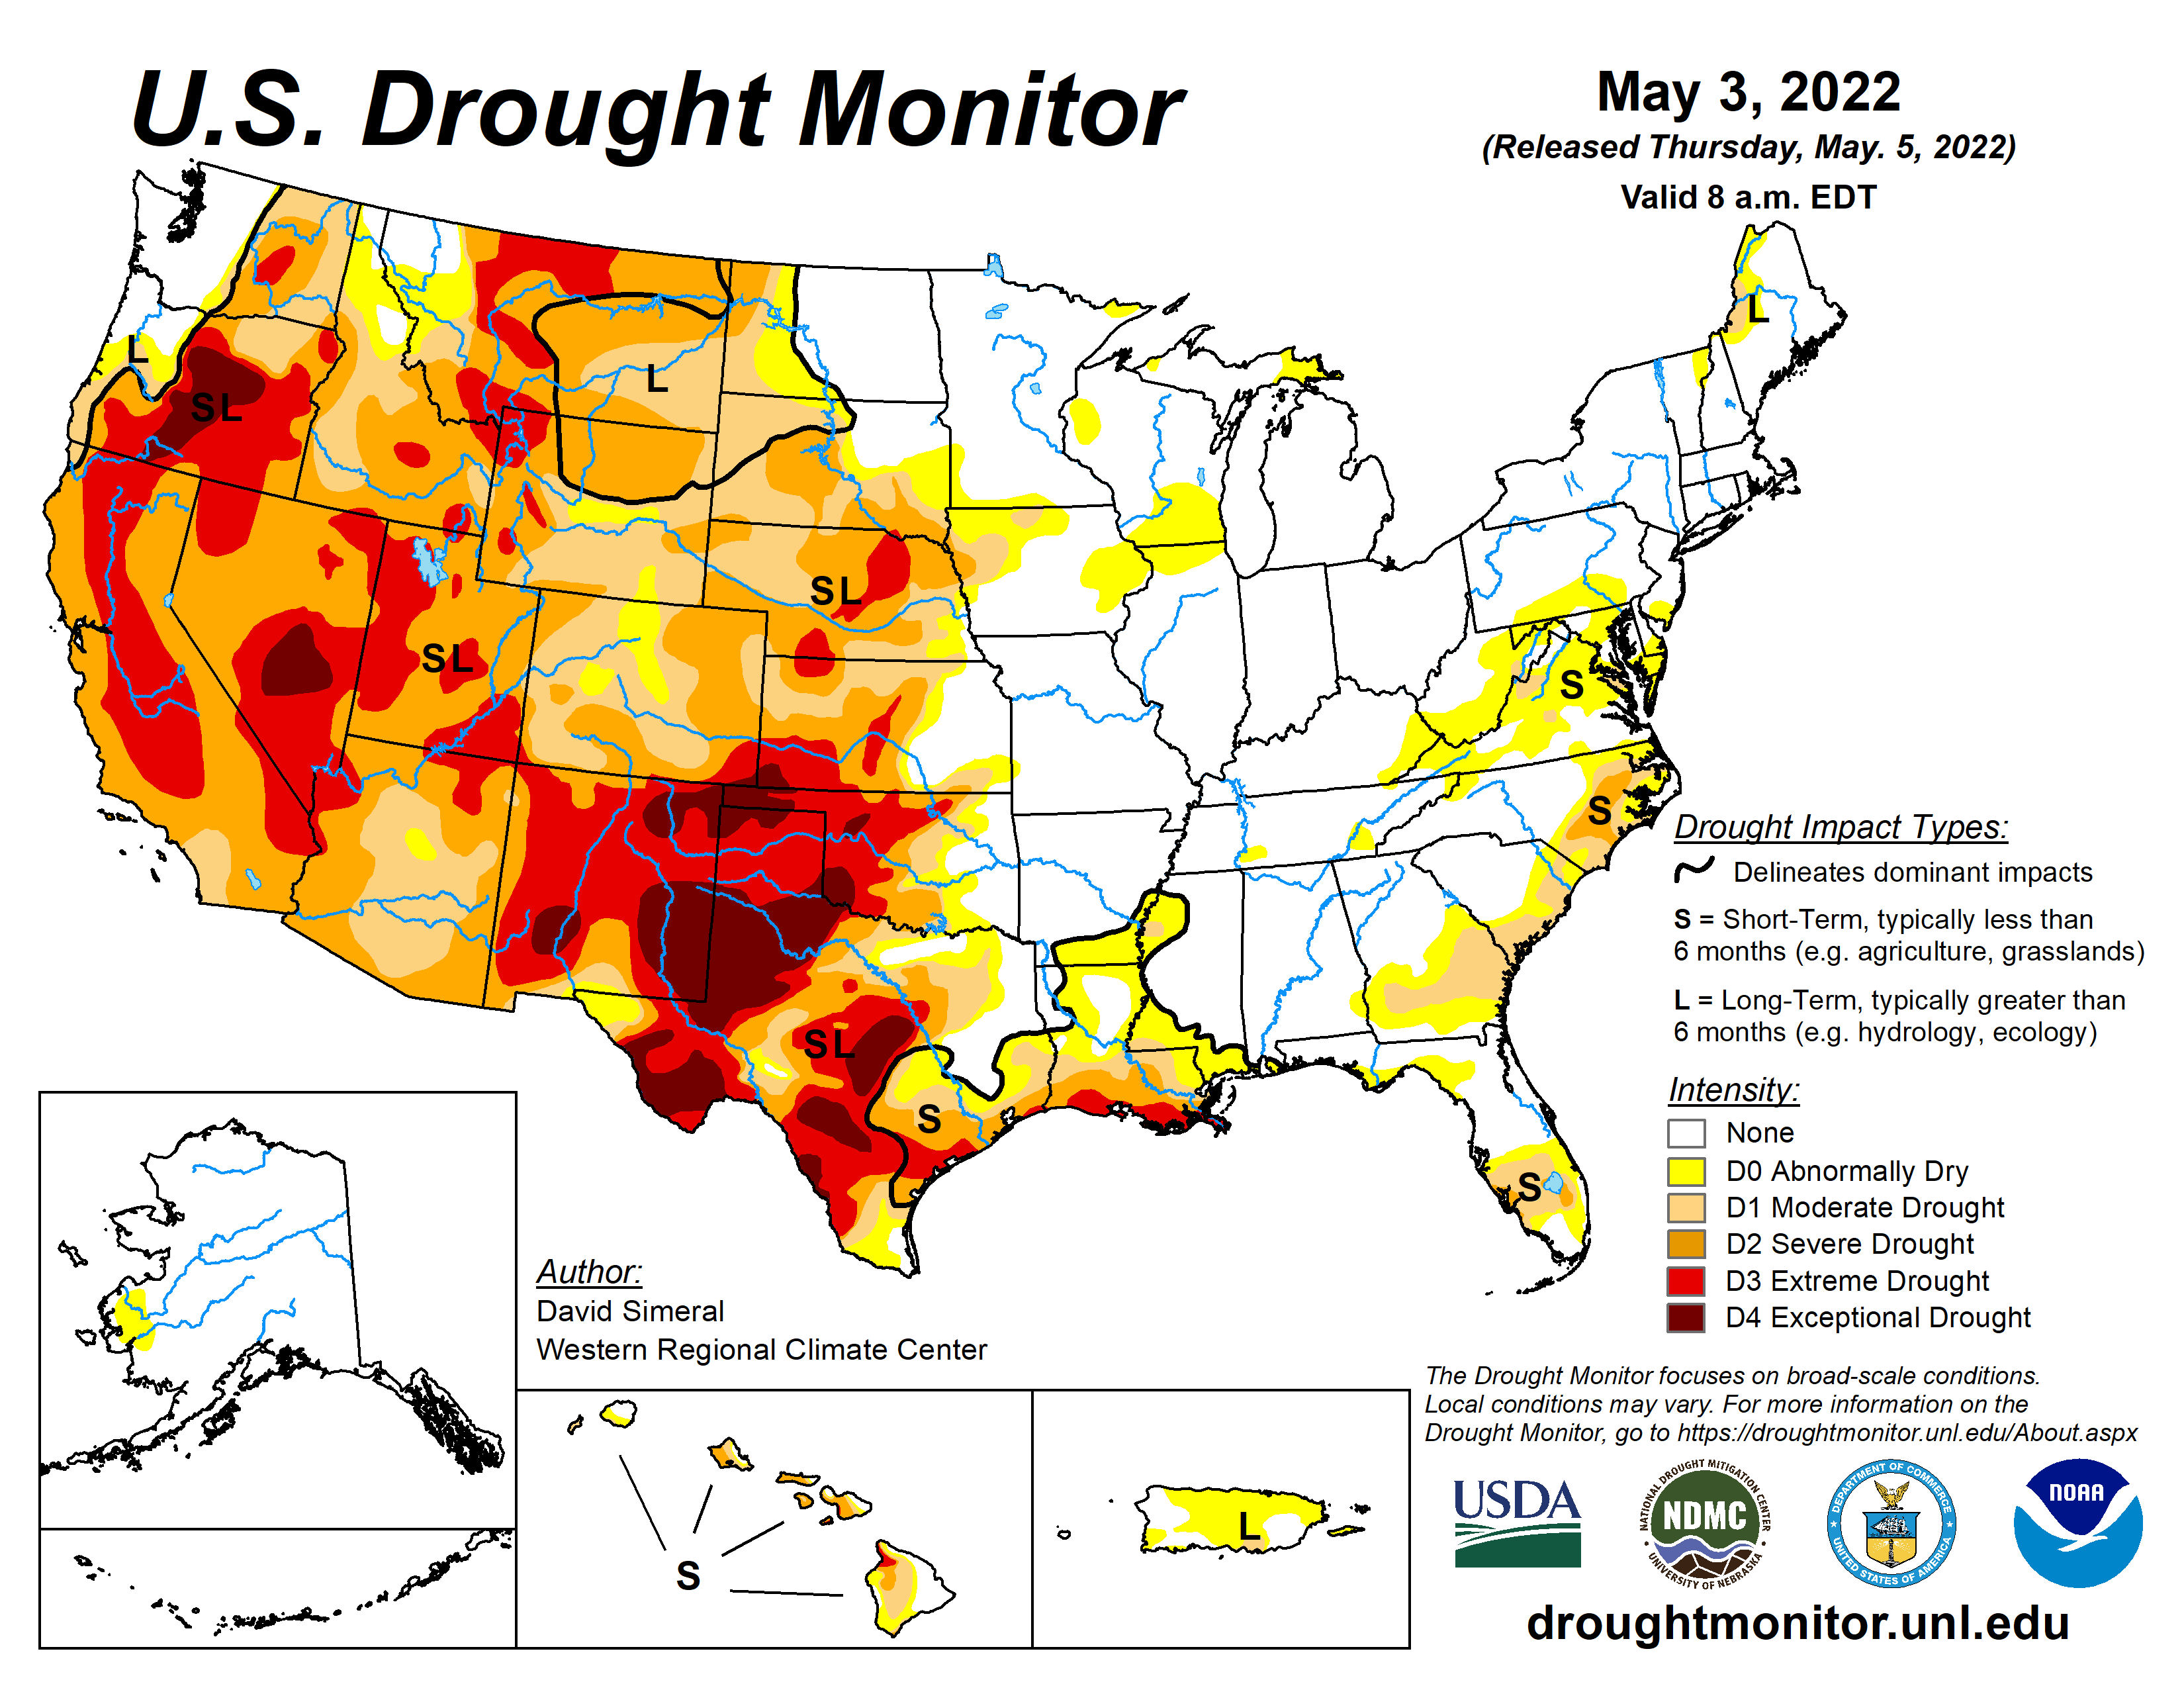 U.S. Drought Monitor, valid May 3, 2022